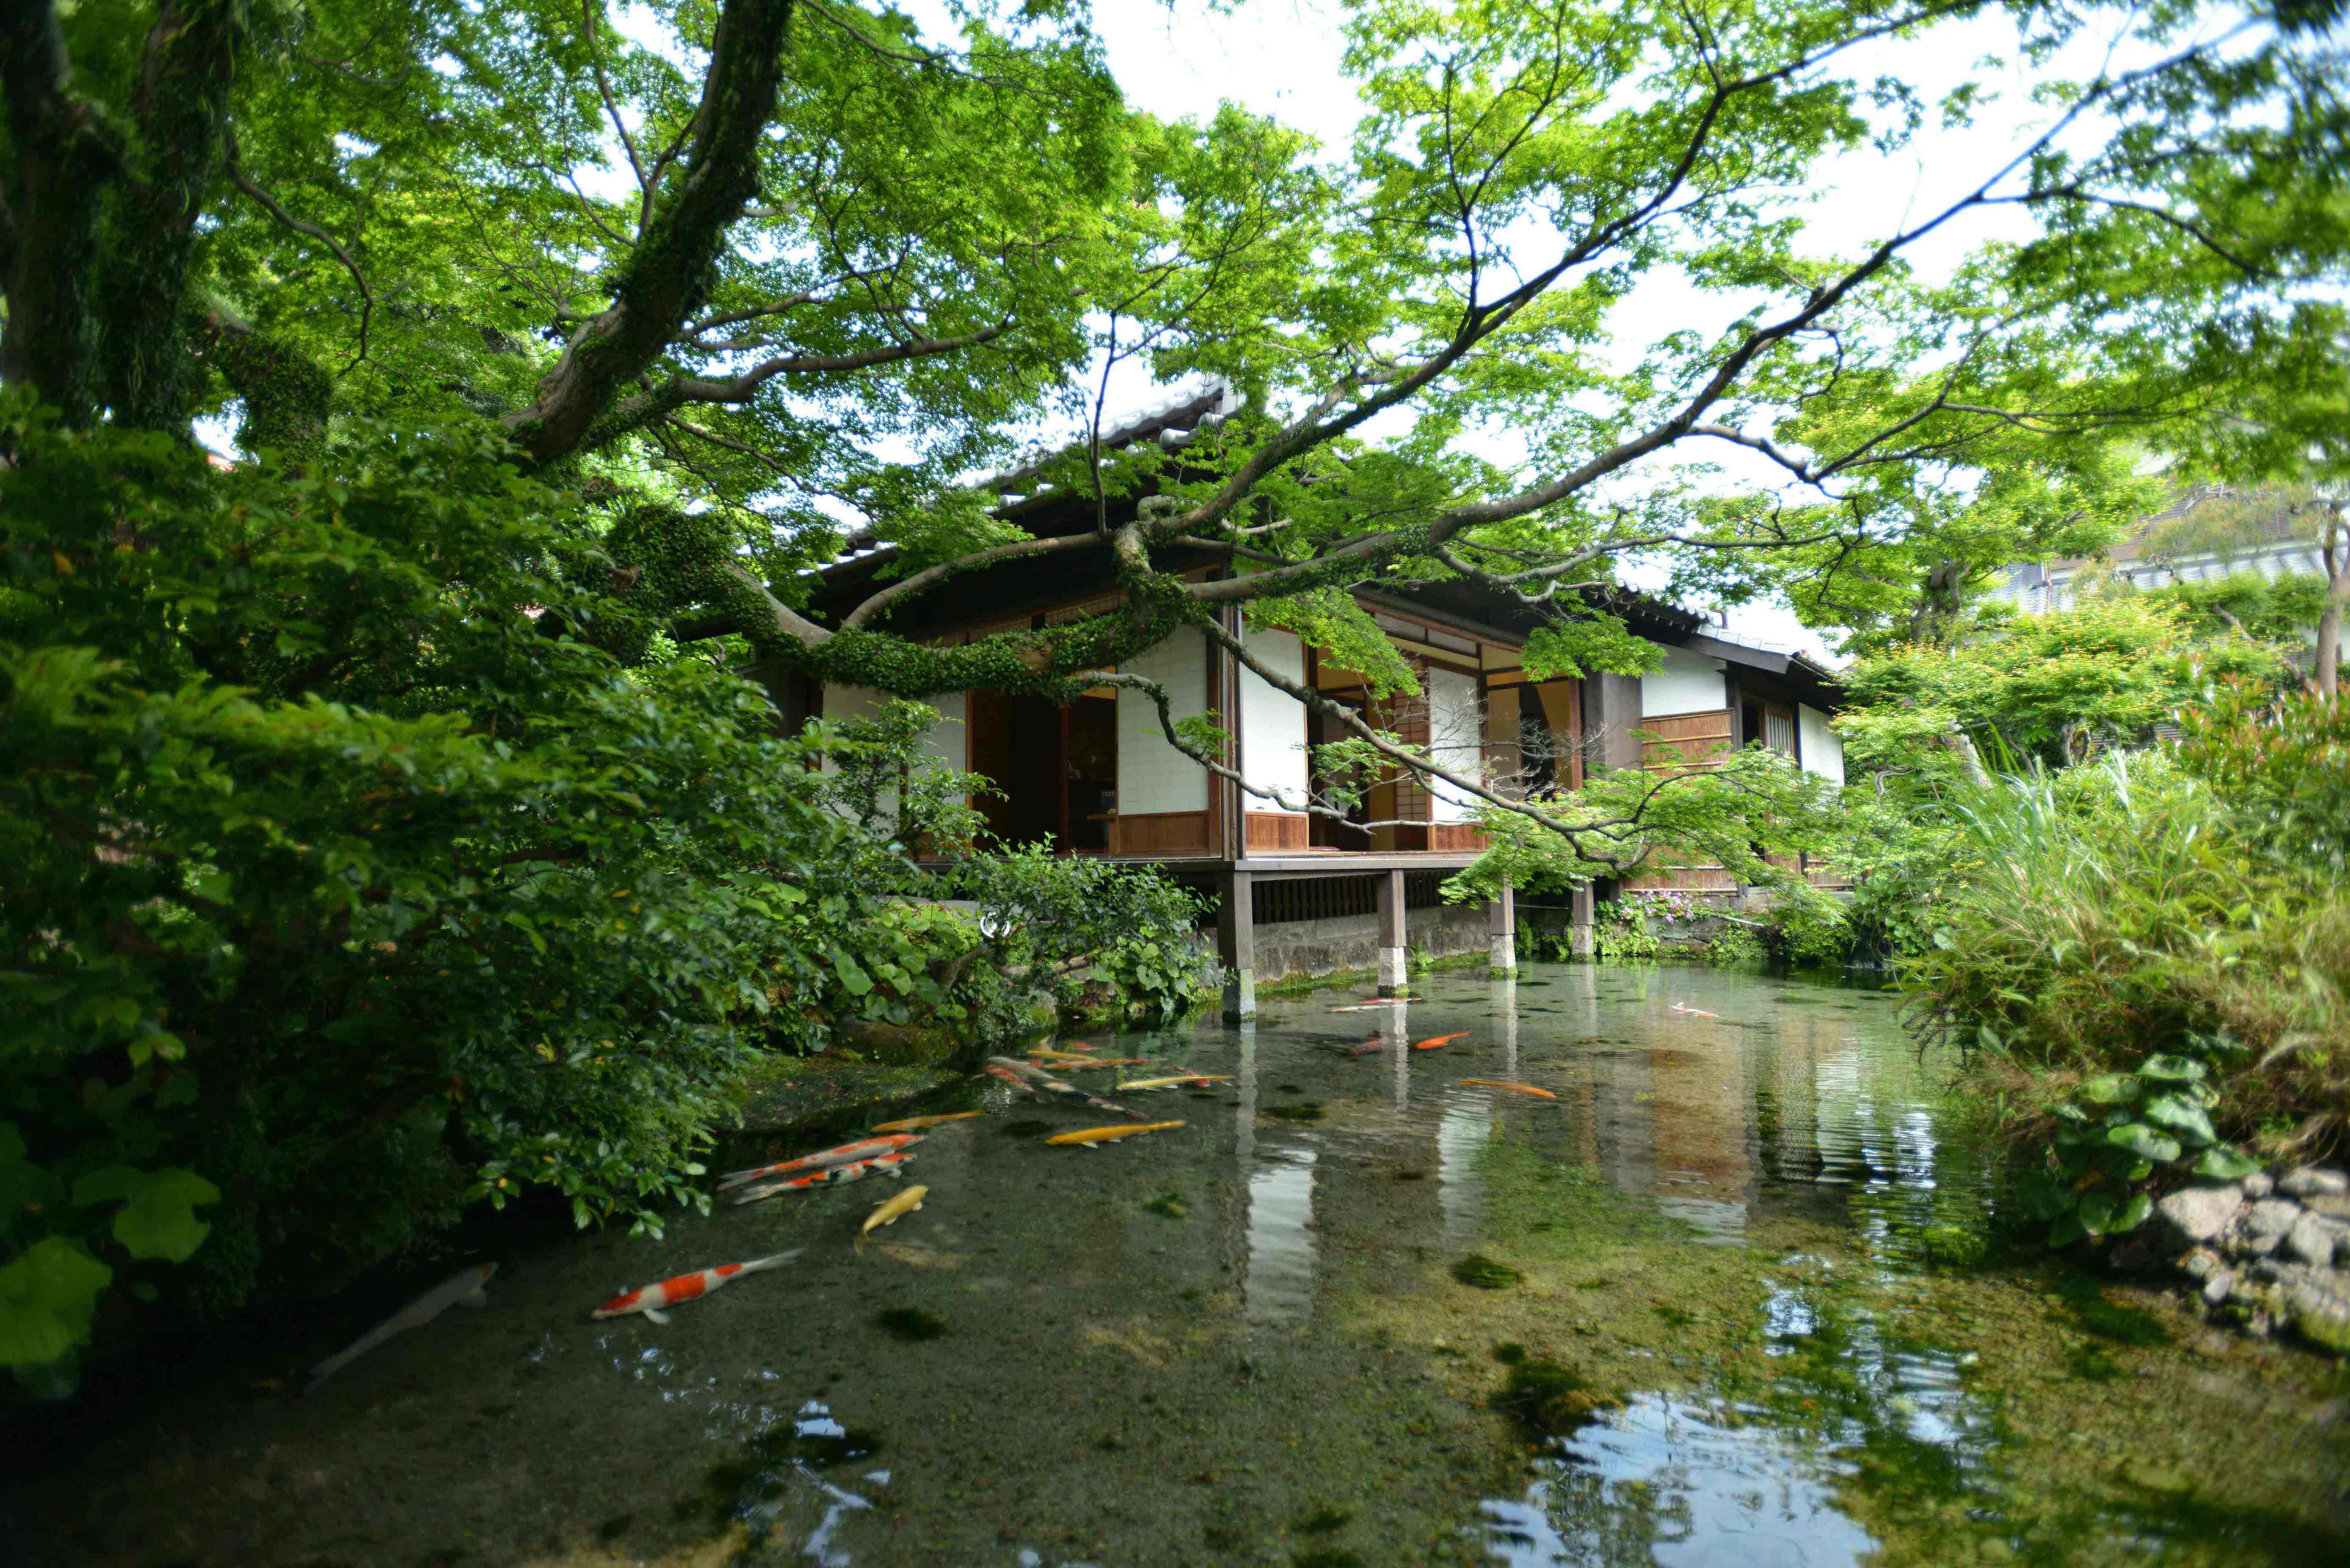 日本の名水百選 水の都島原湧水群『湧水庭園四明荘』